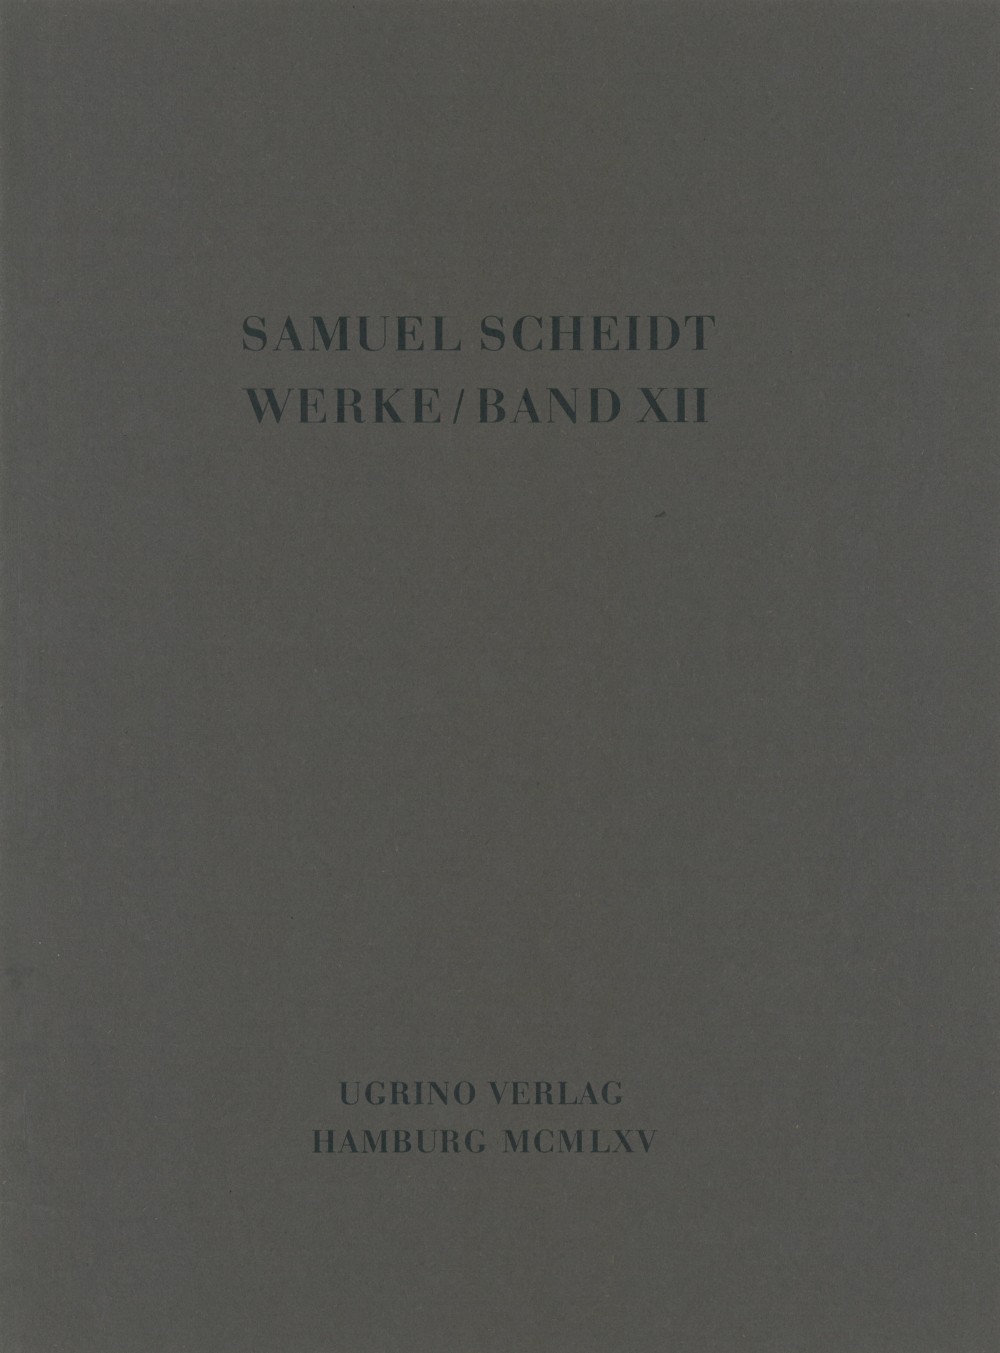 Geistliche Konzerte, Teil IV (SCHEIDT SAMUEL)